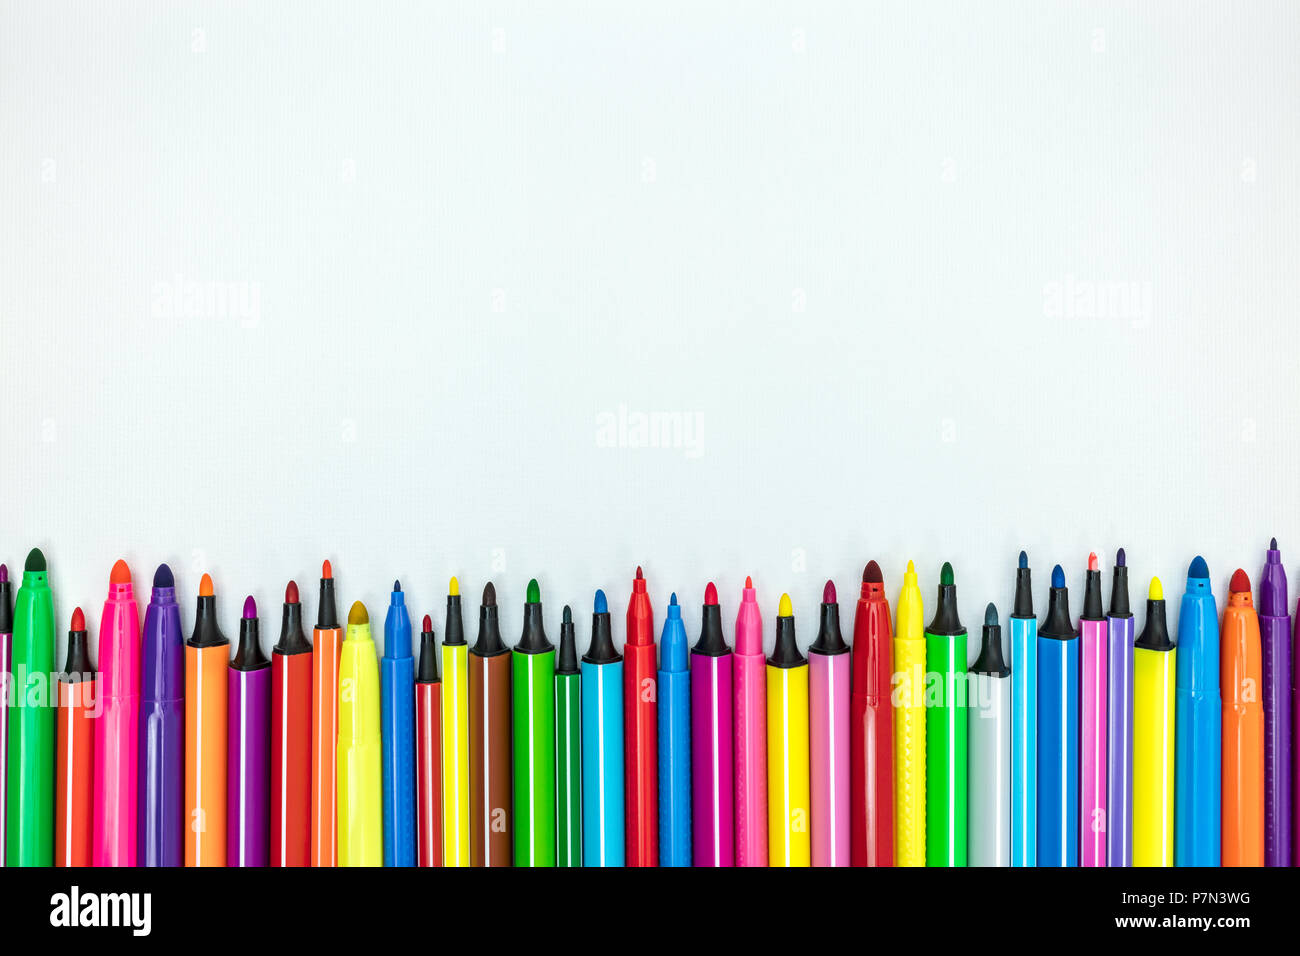 Volksschule liefern. Satz von verschiedenen bunten Markierungen auf weißem Schreibtisch Hintergrund, flache Ansicht Stockfoto